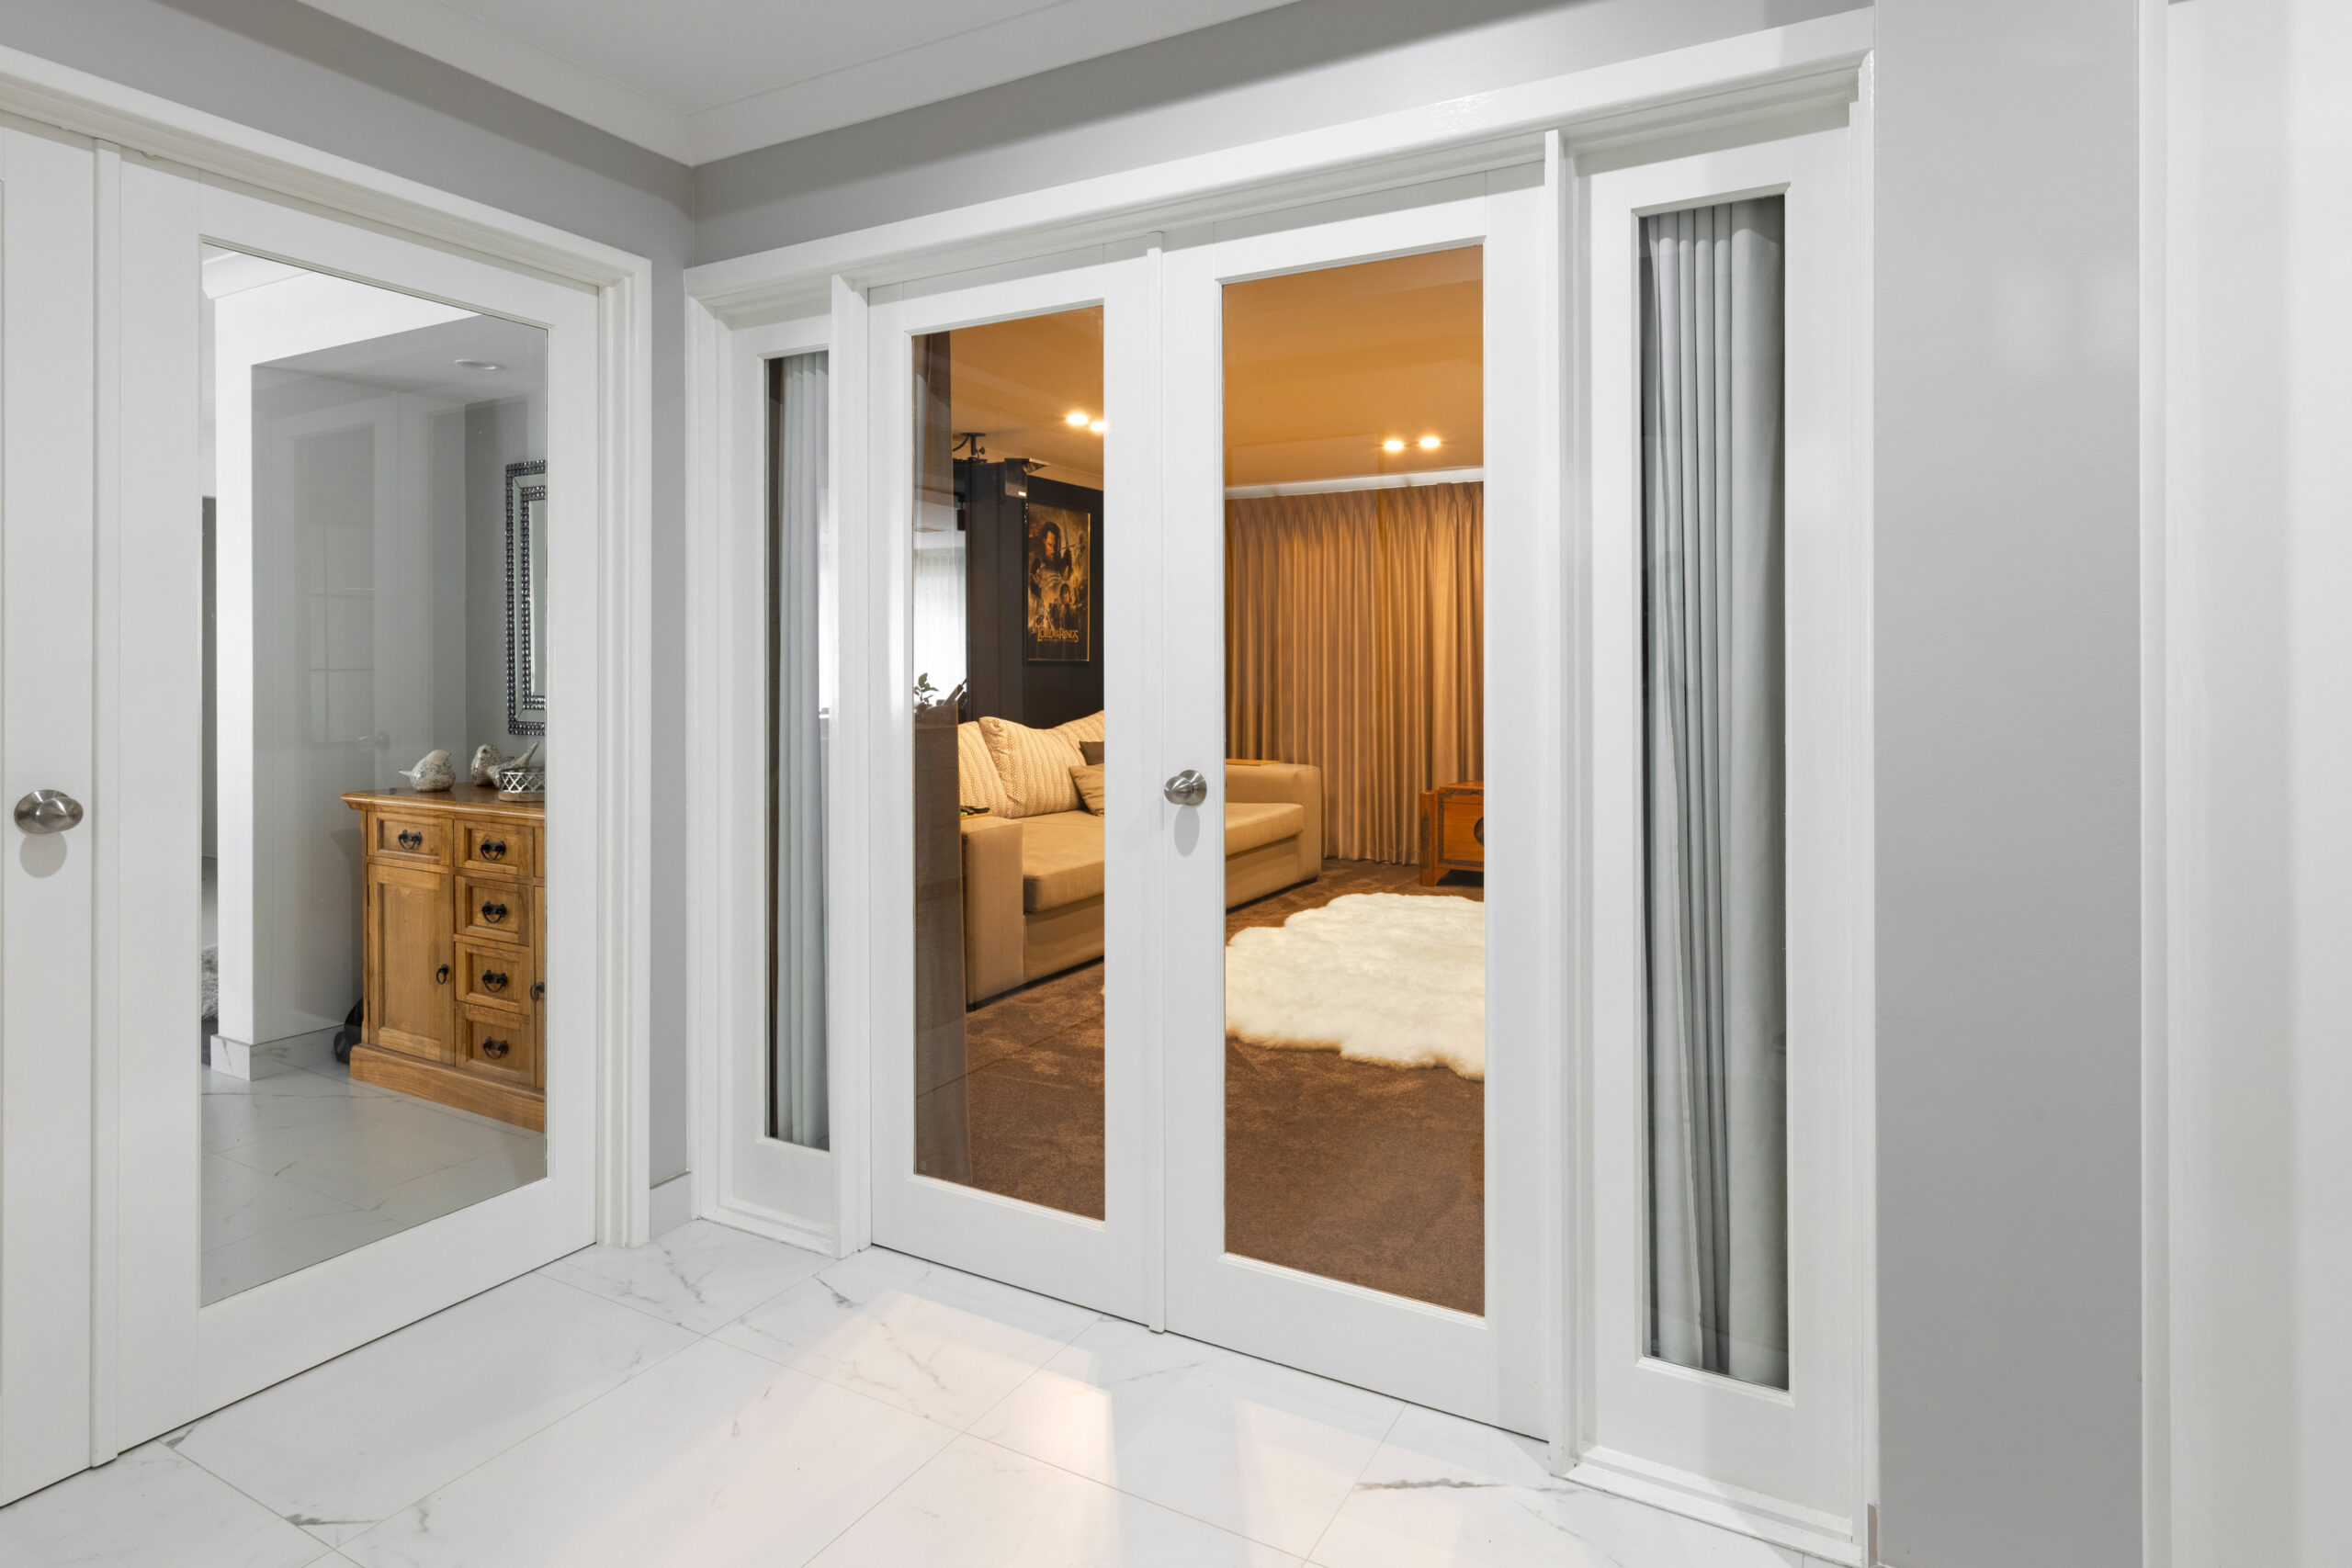 6 Lite Glass French Door (French/Double Doors) by Designer Doors